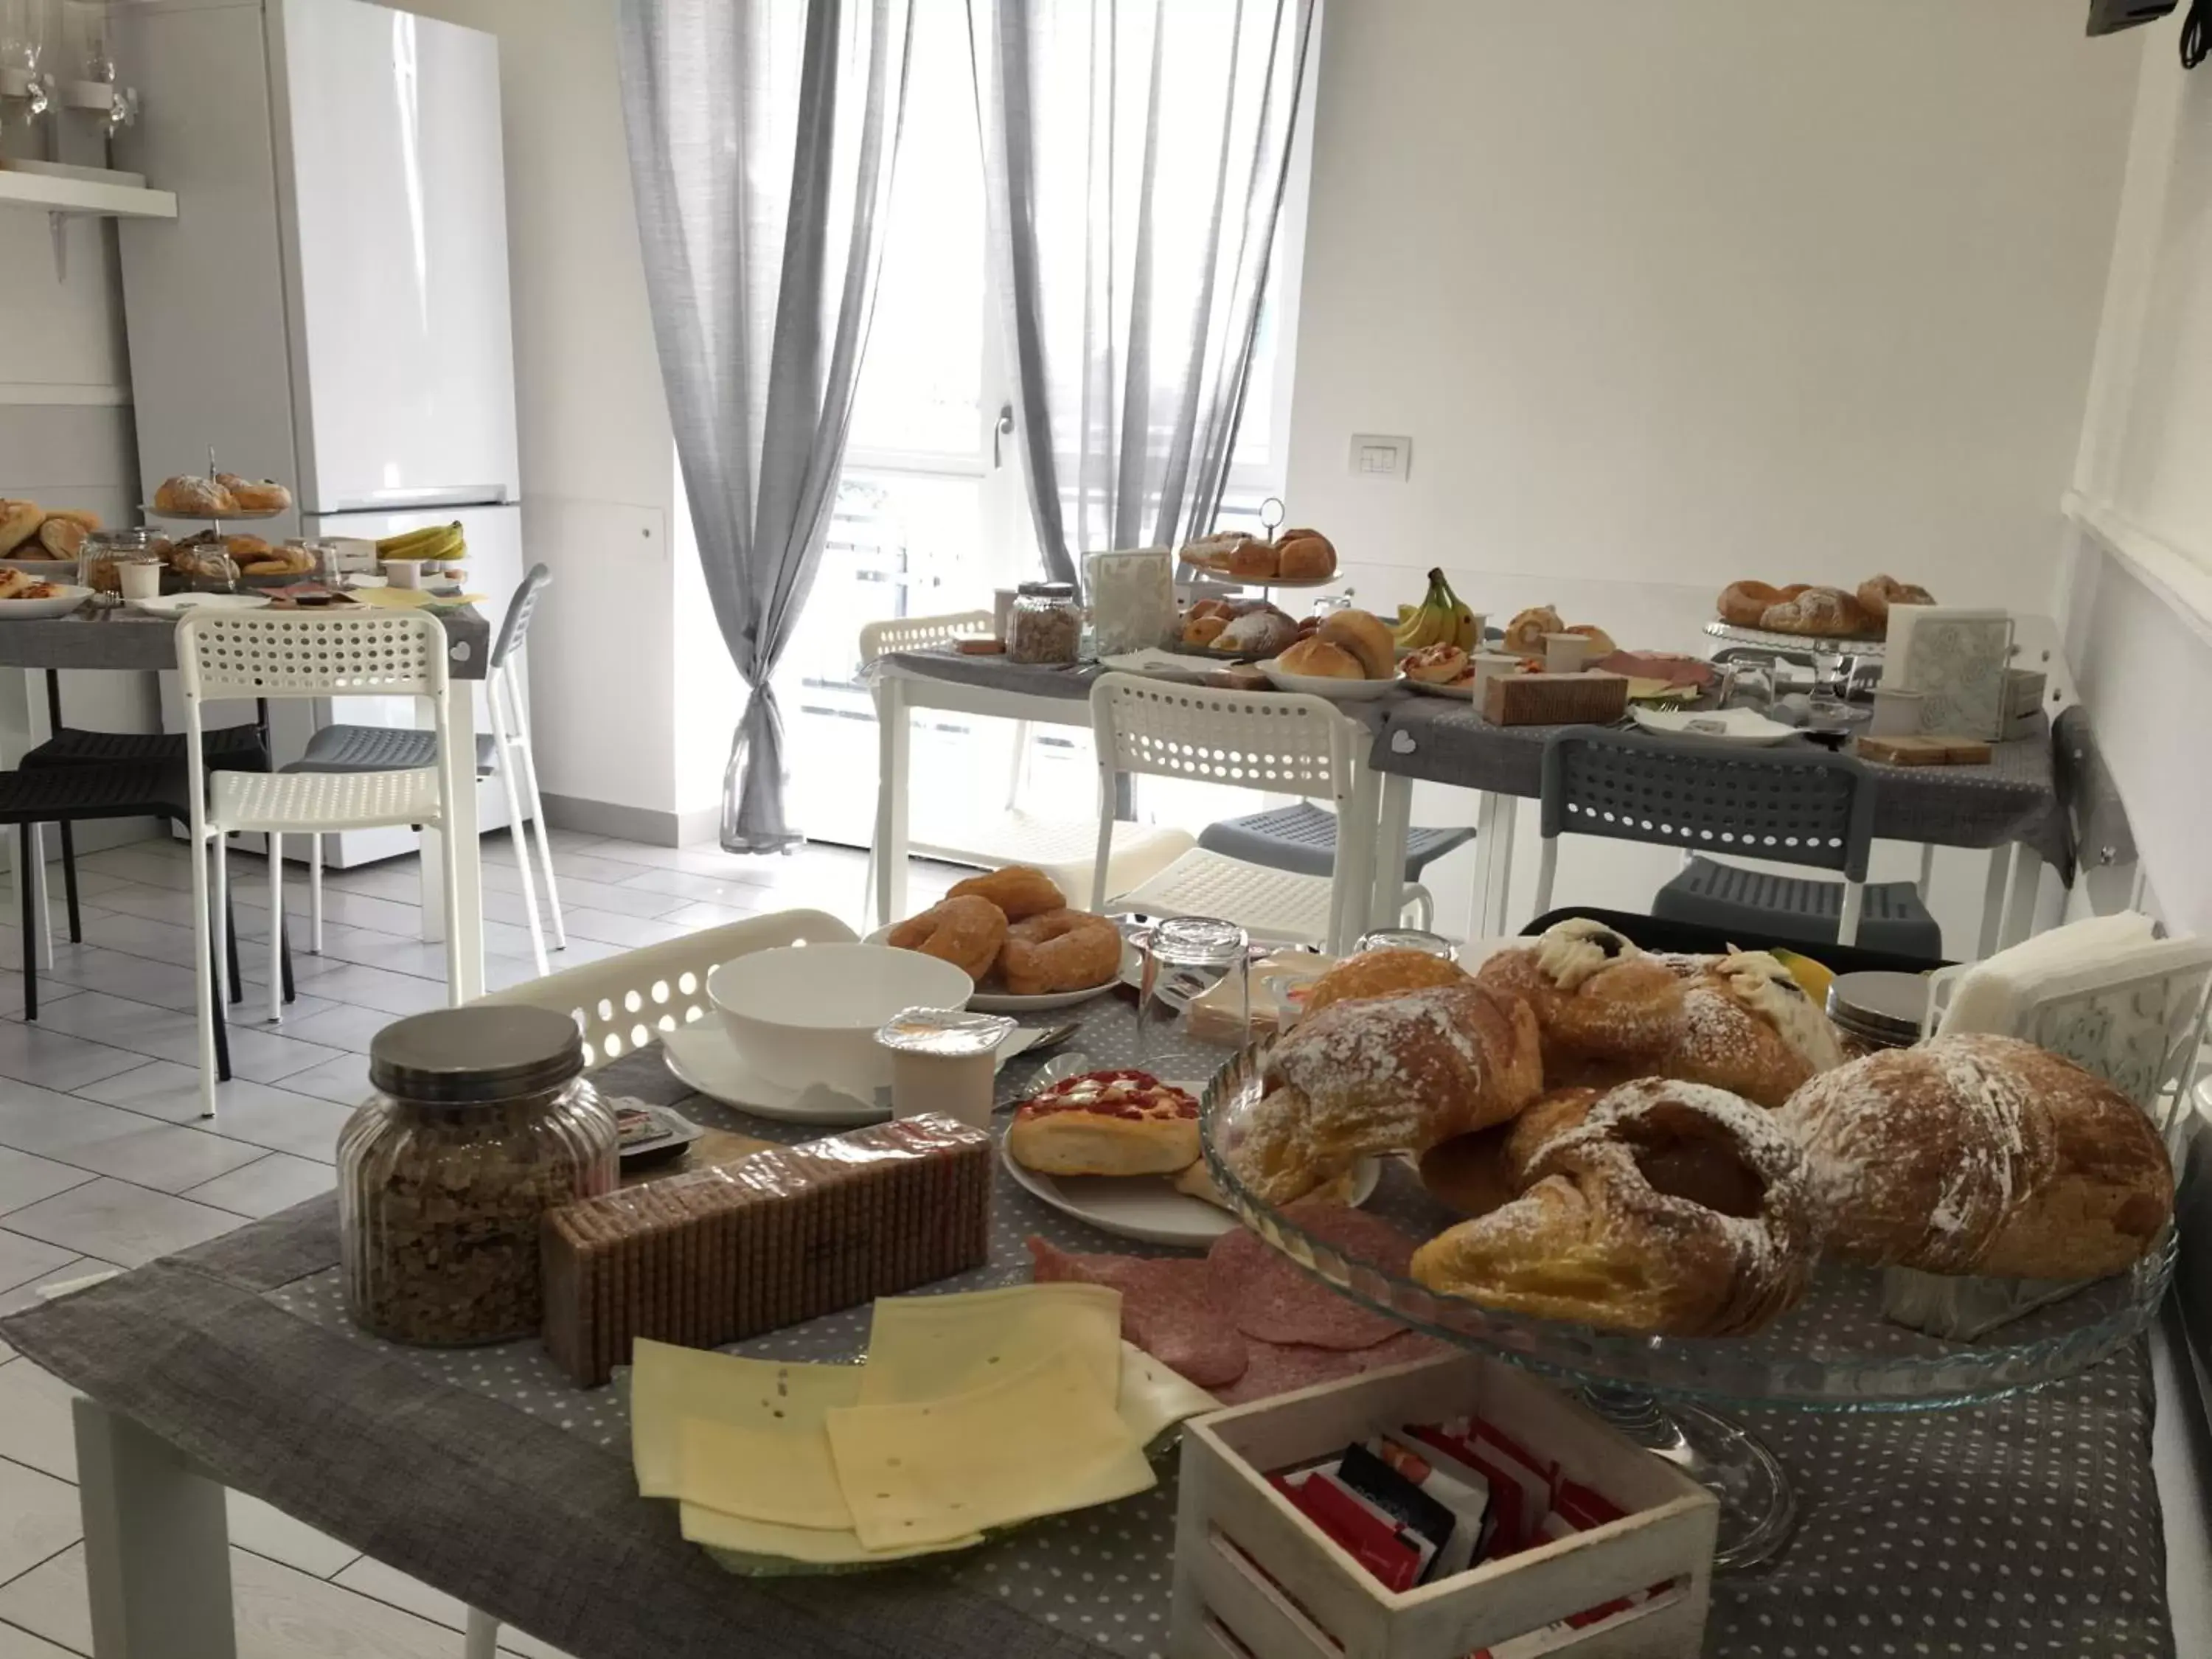 Breakfast in Maison De luxe